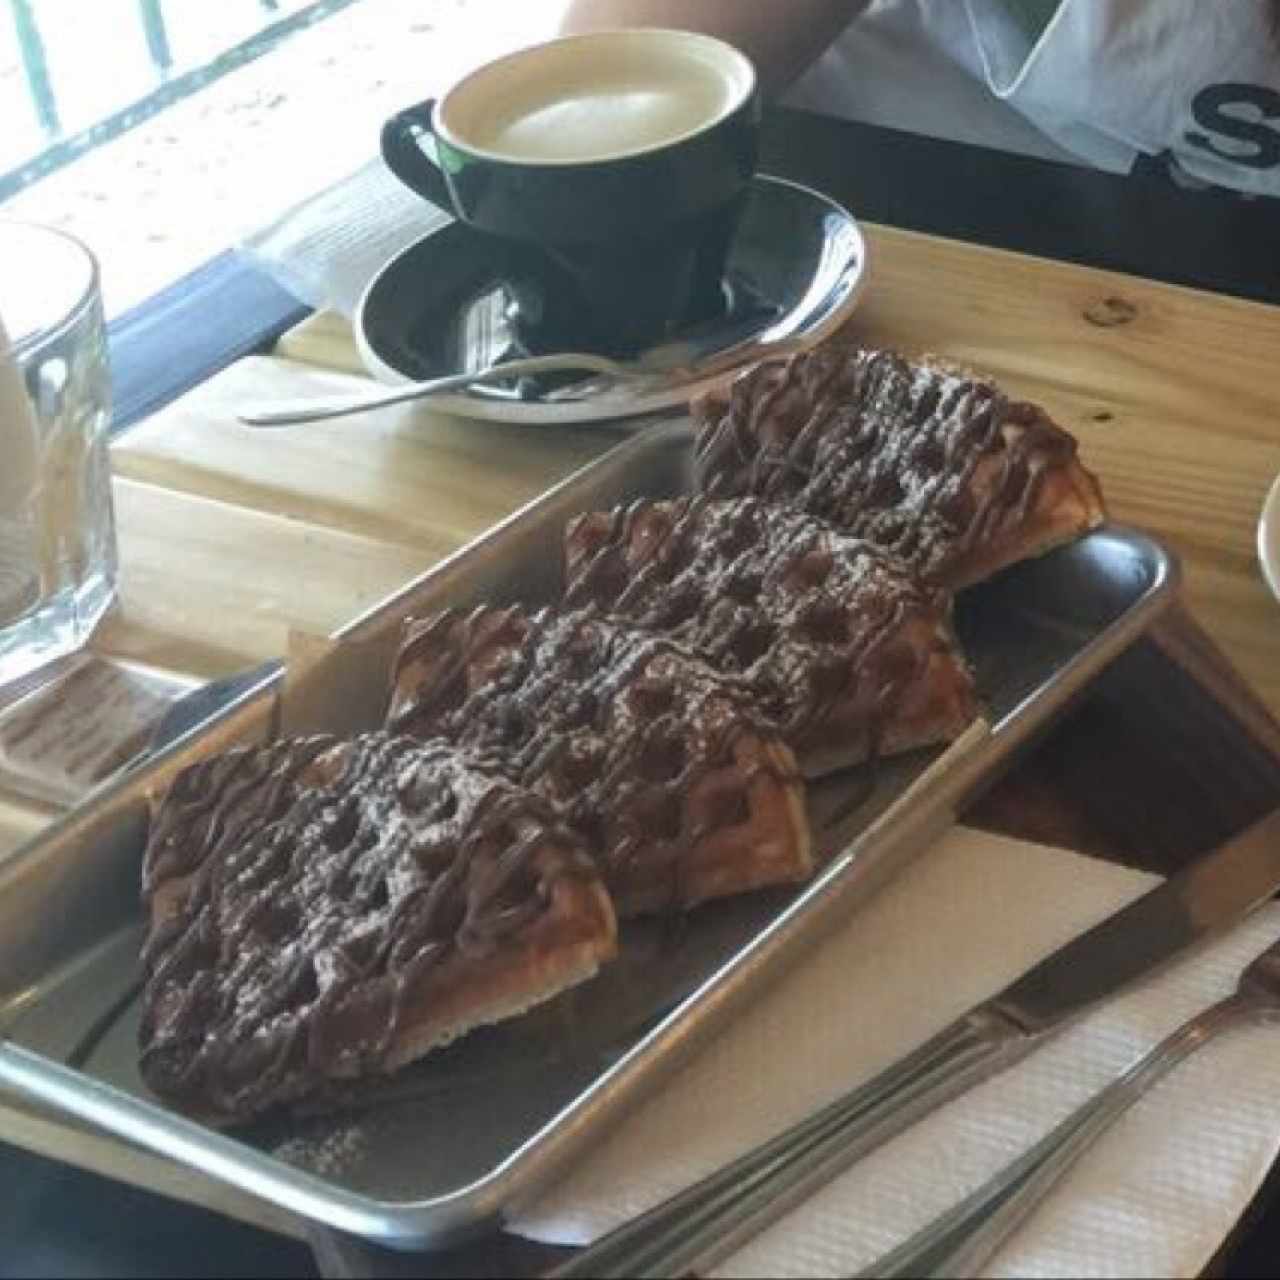 waffles de nutella y café con leche!